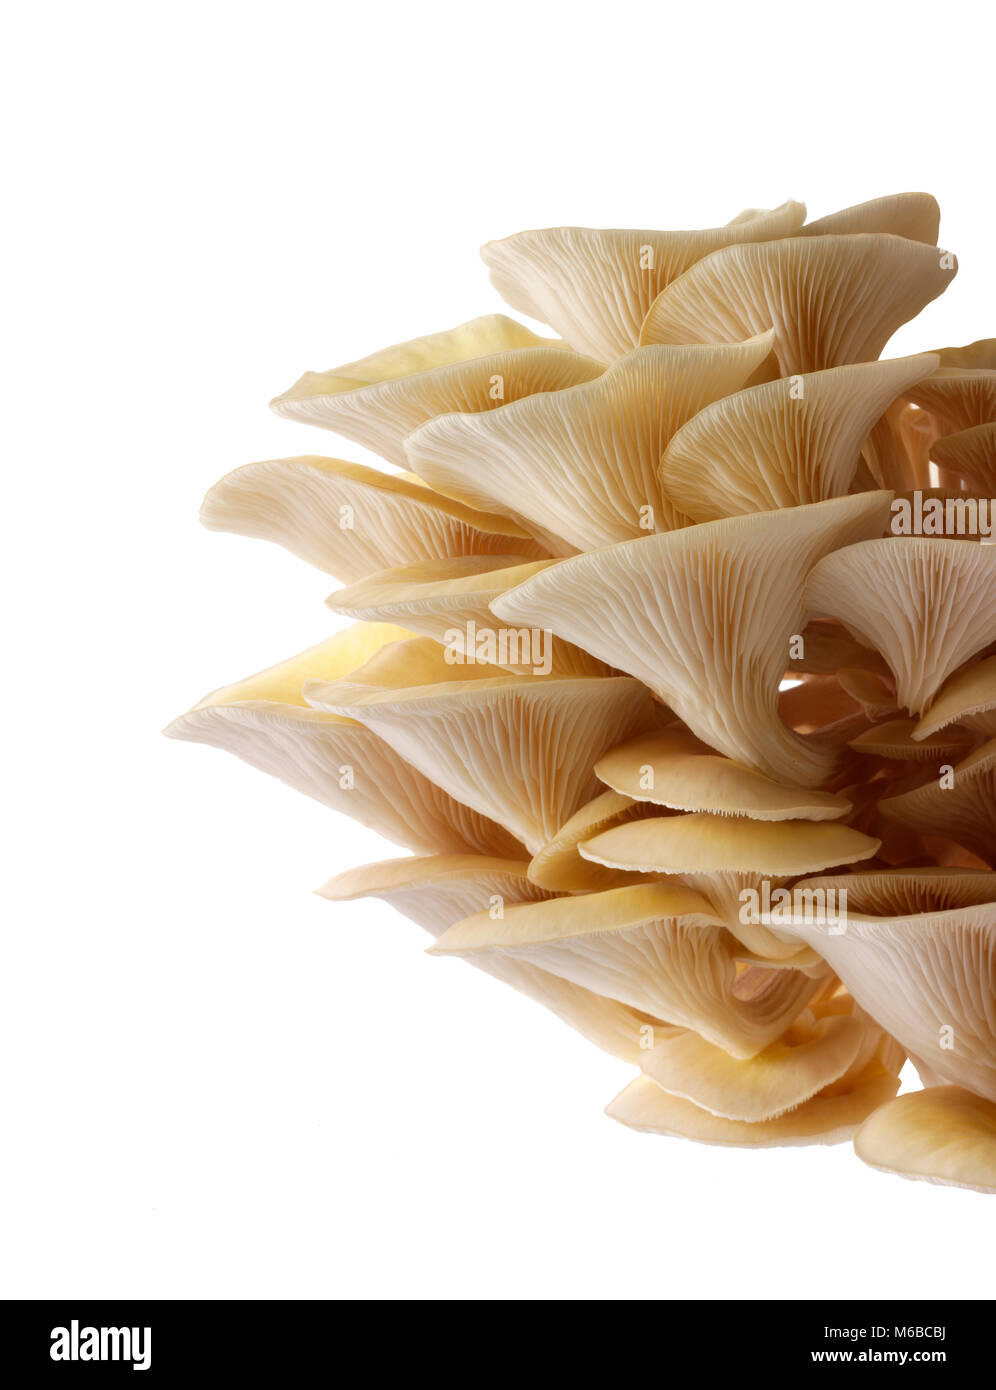 Raccolti freschi prodotti commestibili di colore giallo o golden oyster (funghi pleurotus citrinopileatus) in una scatola di crescere contro uno sfondo bianco Foto Stock